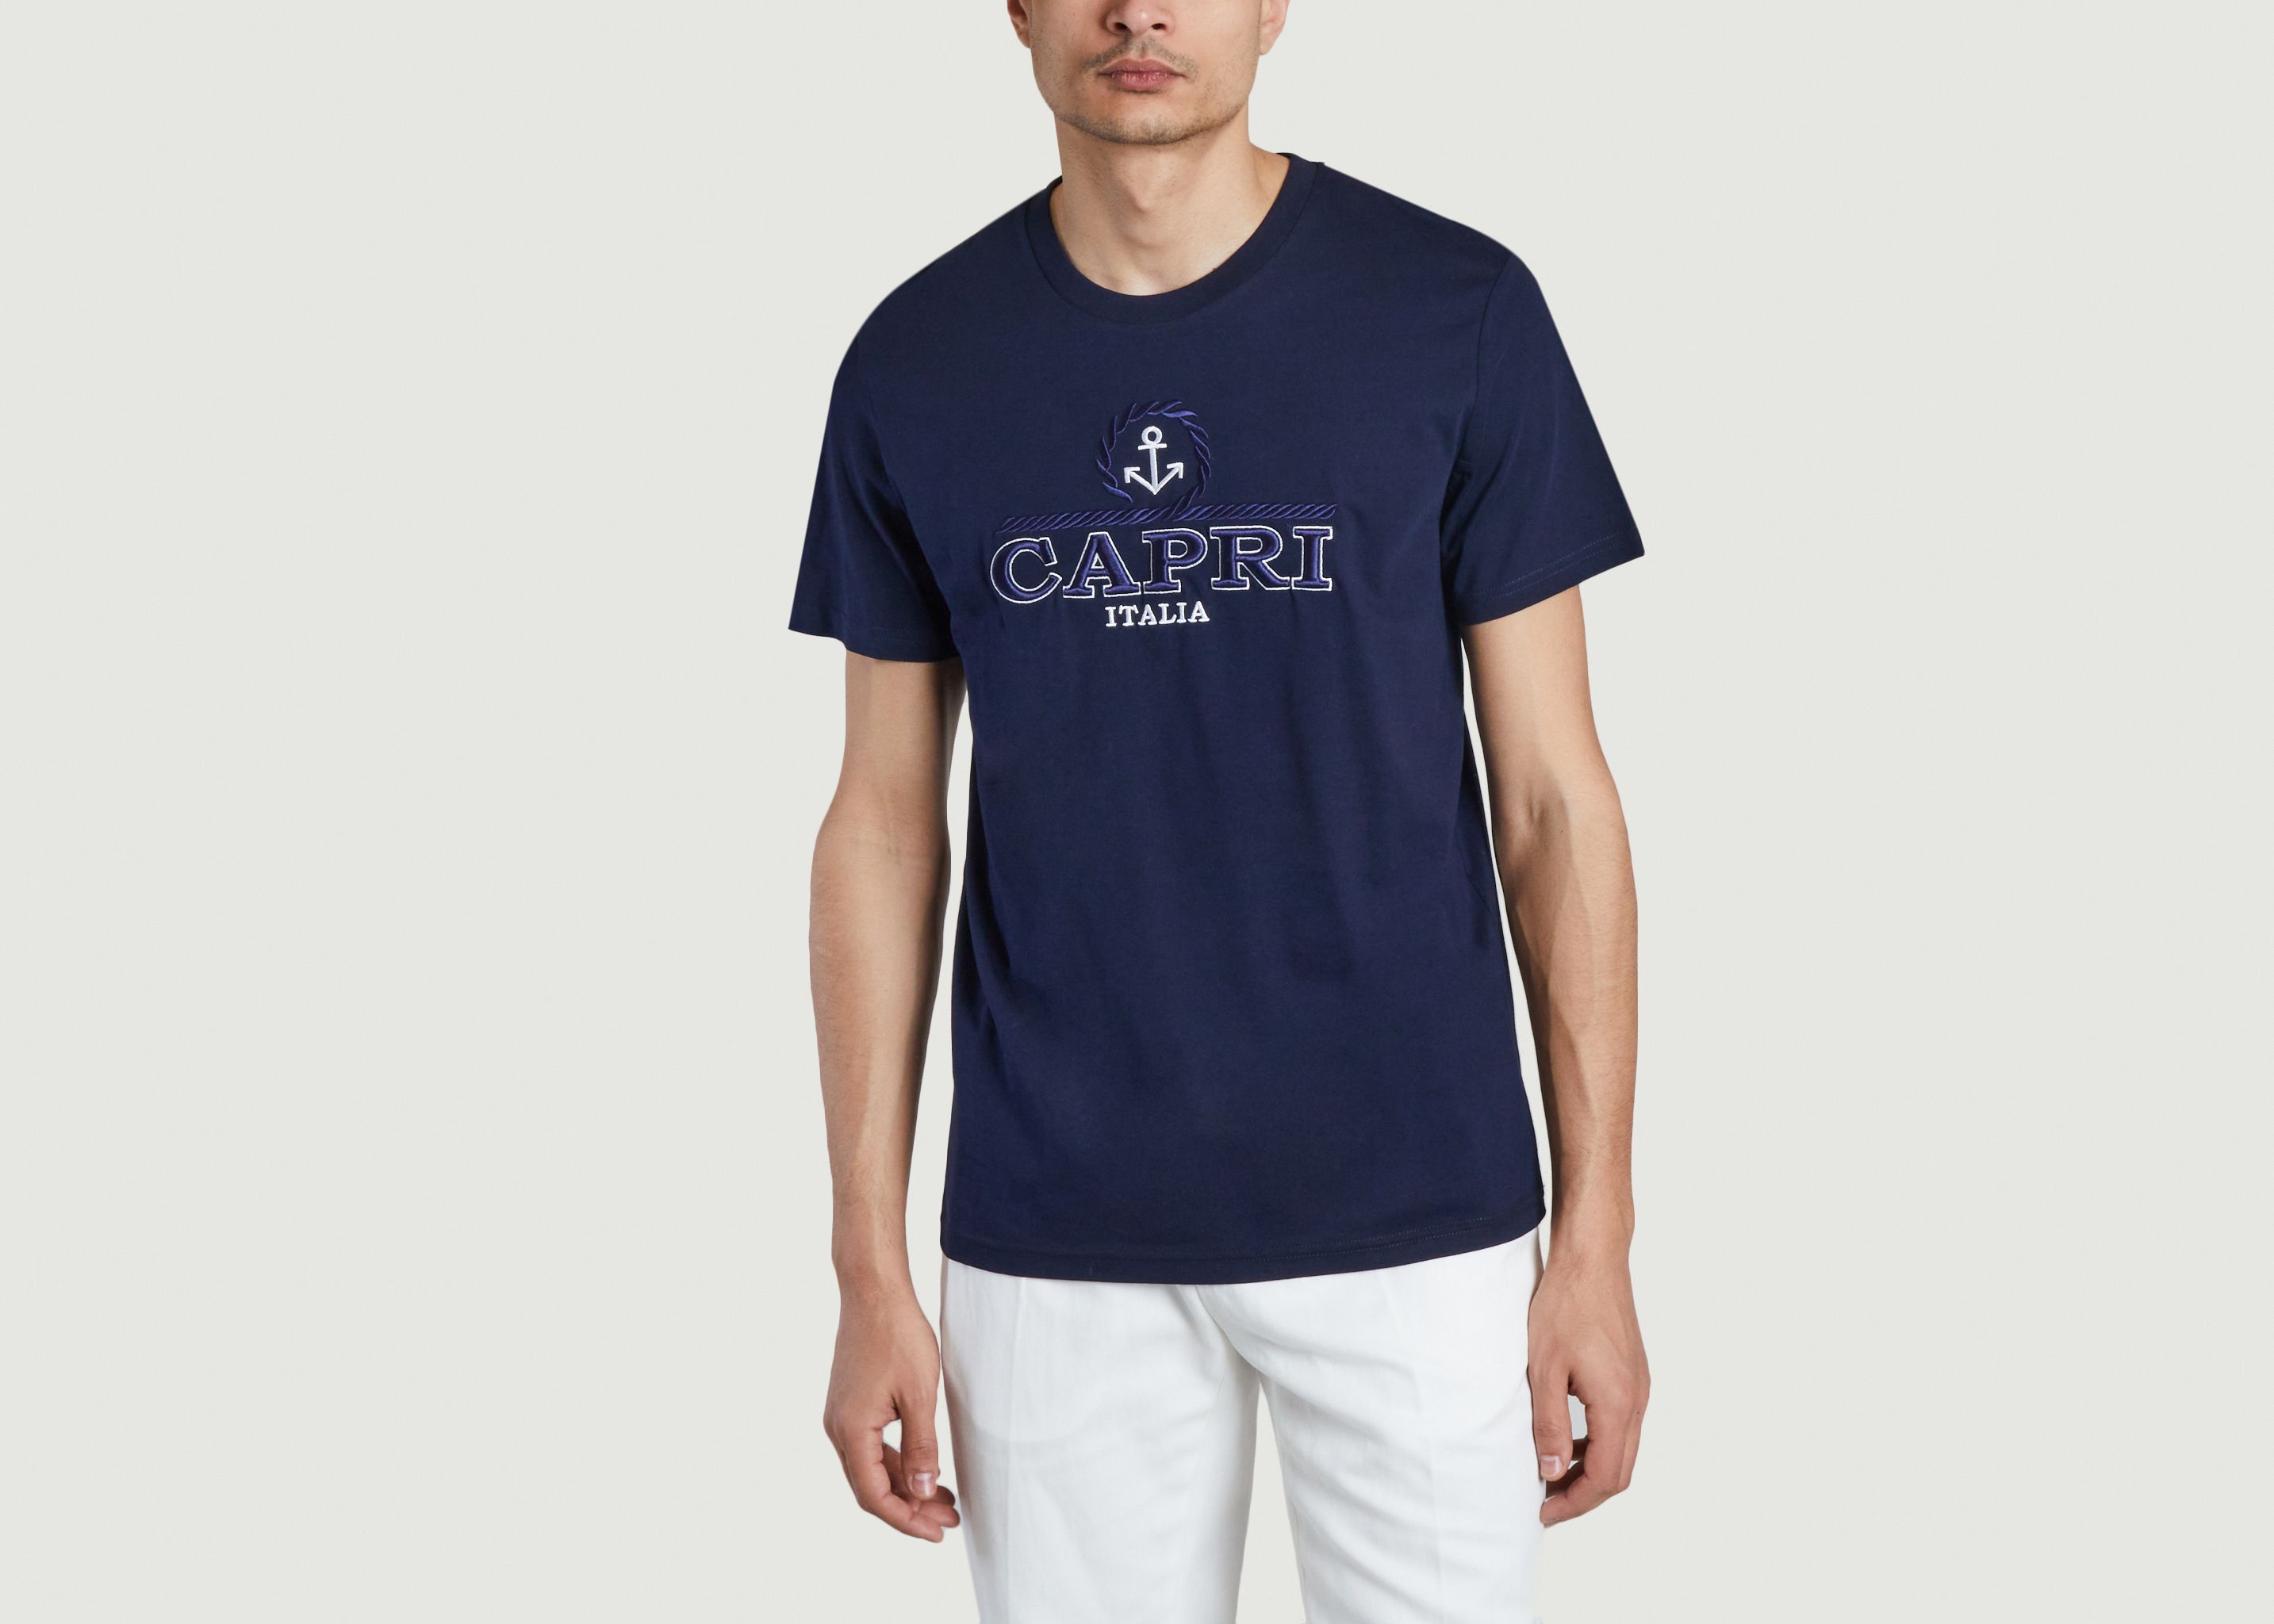 Tshirt Capri Anchor - Harmony